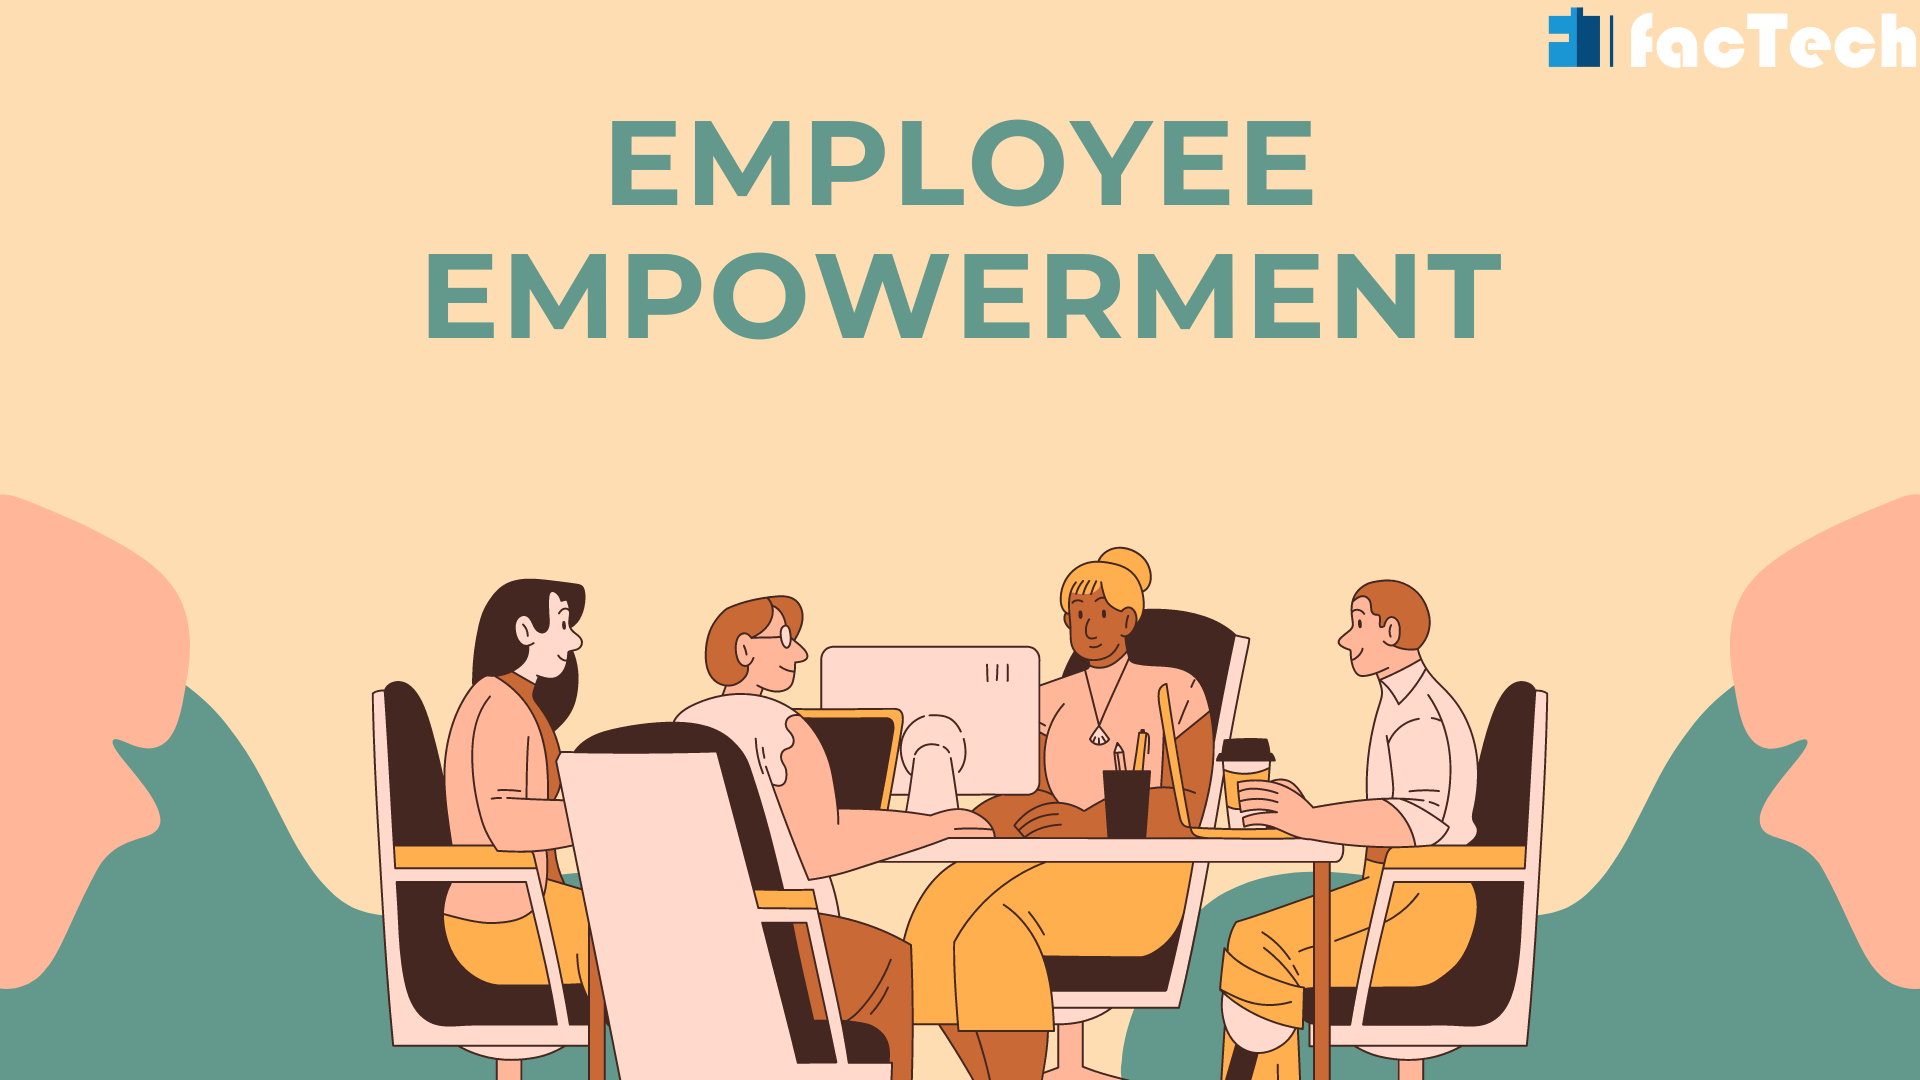 Employee empowerment 